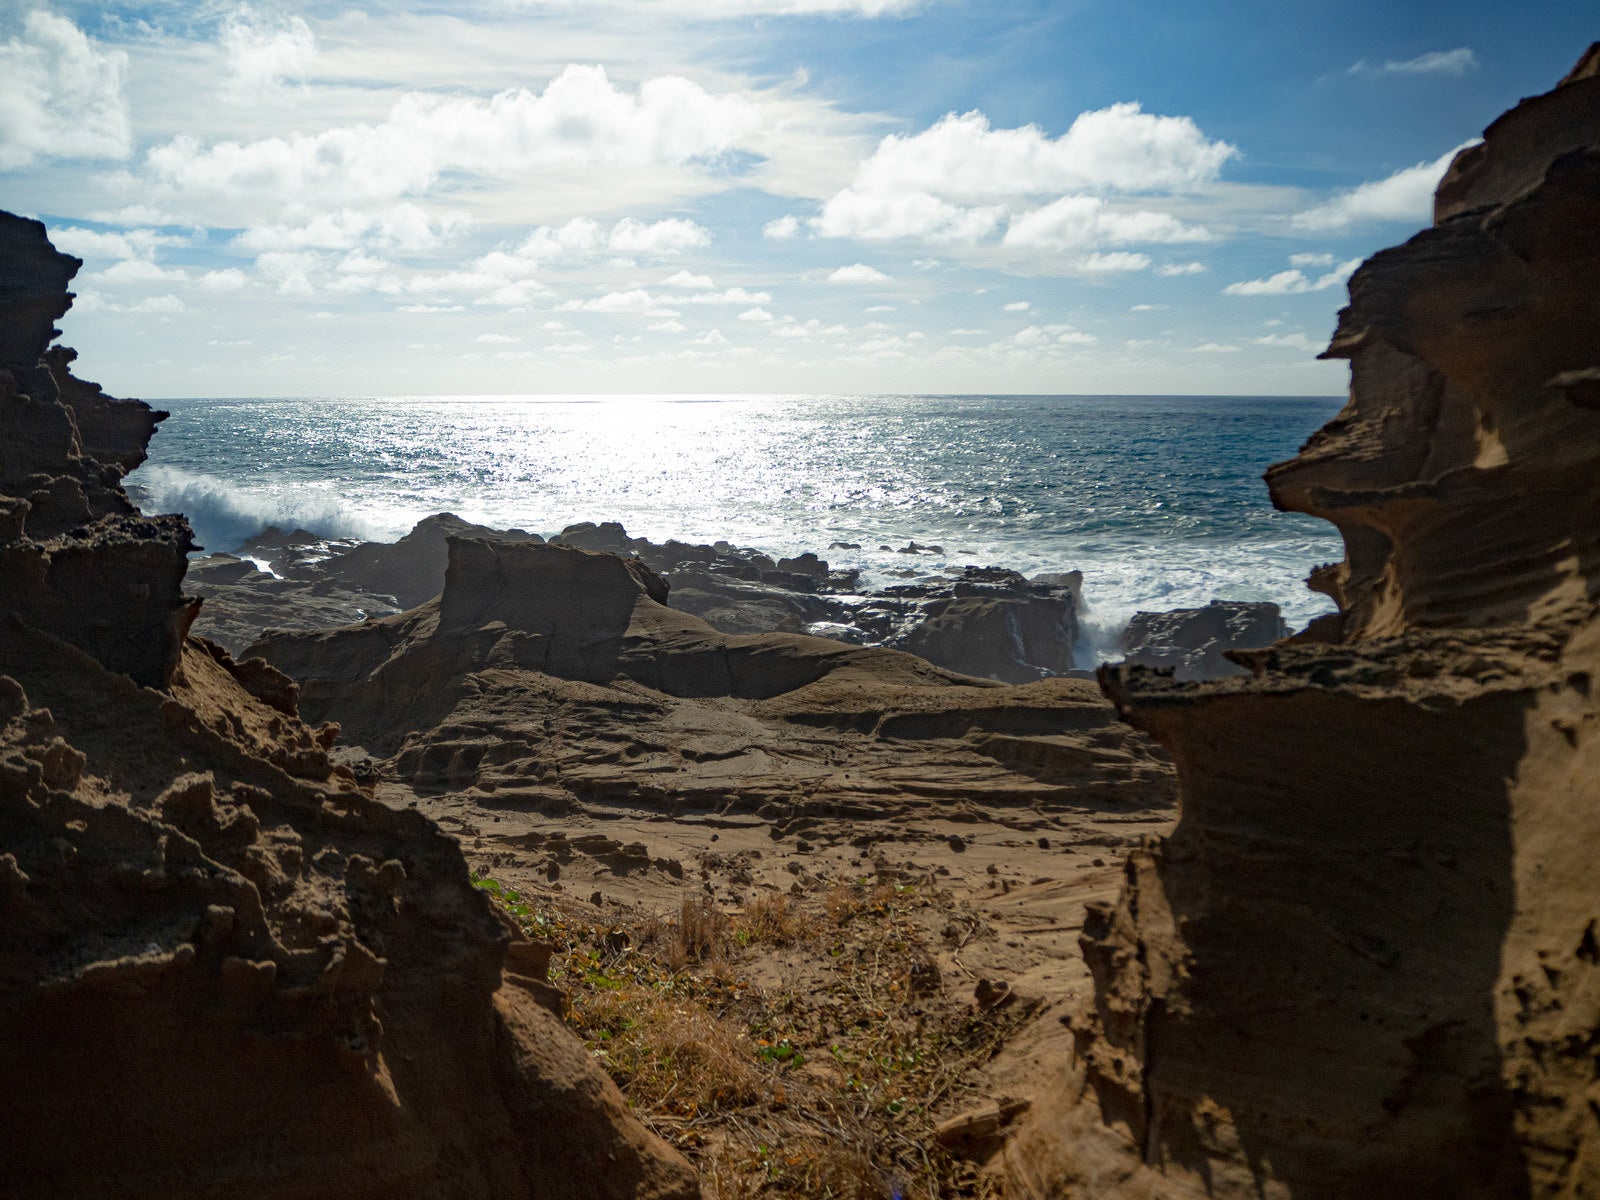 「激しく寄せる波の飛沫でかすむ釜岩の波打ち際」の写真